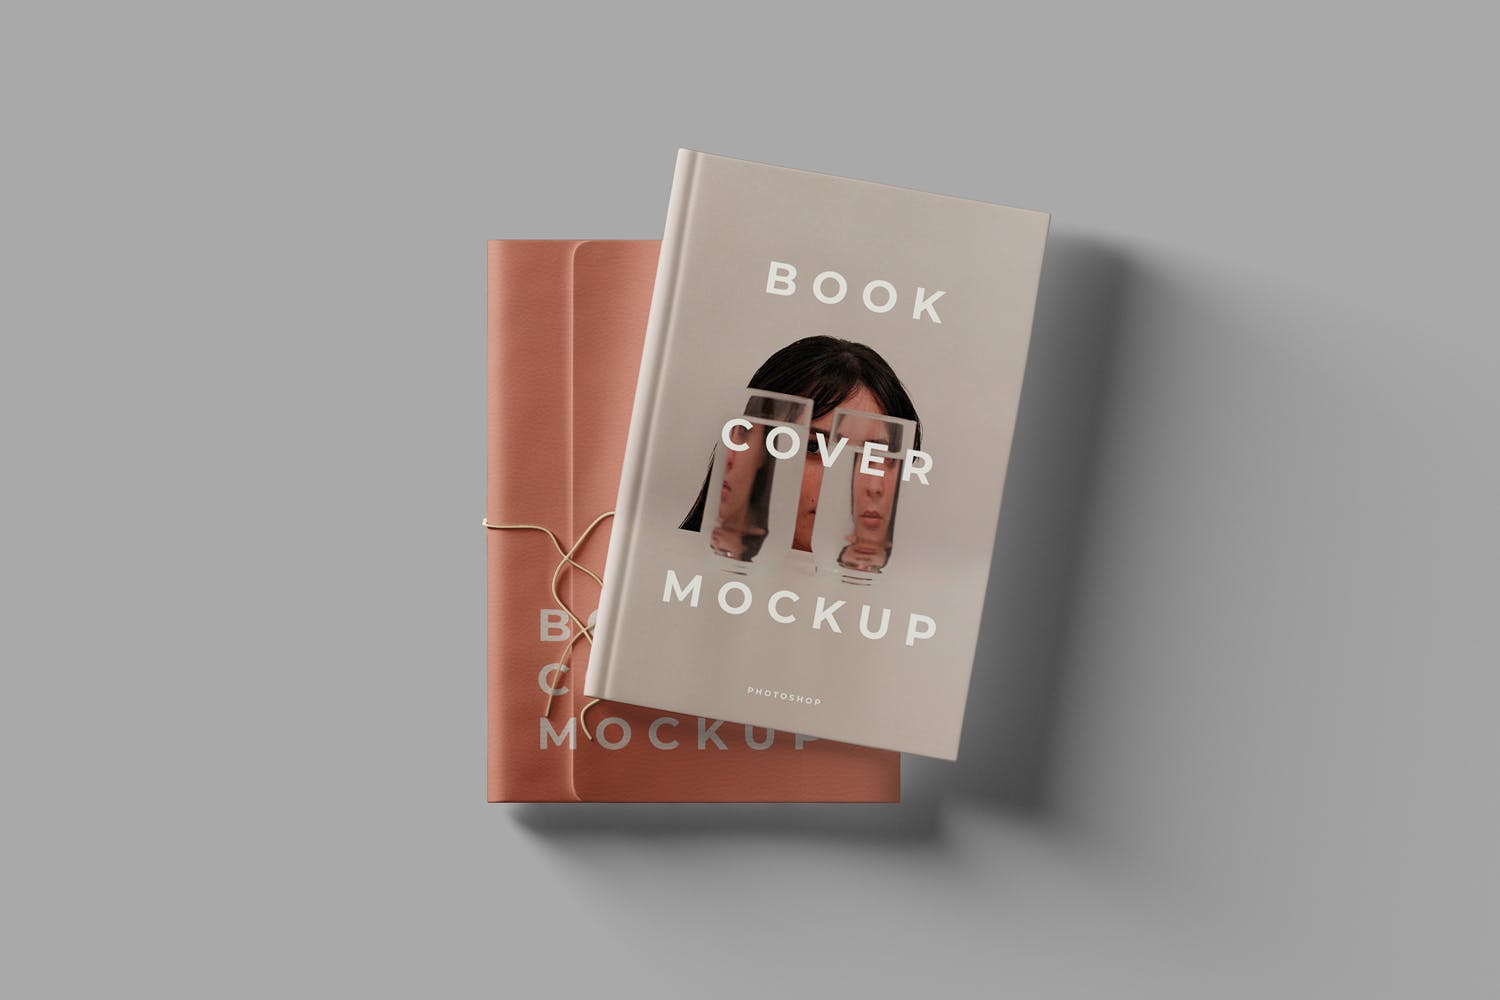 镂空设计风格精装图书封面设计样机模板 Book Cover Mockups插图(3)